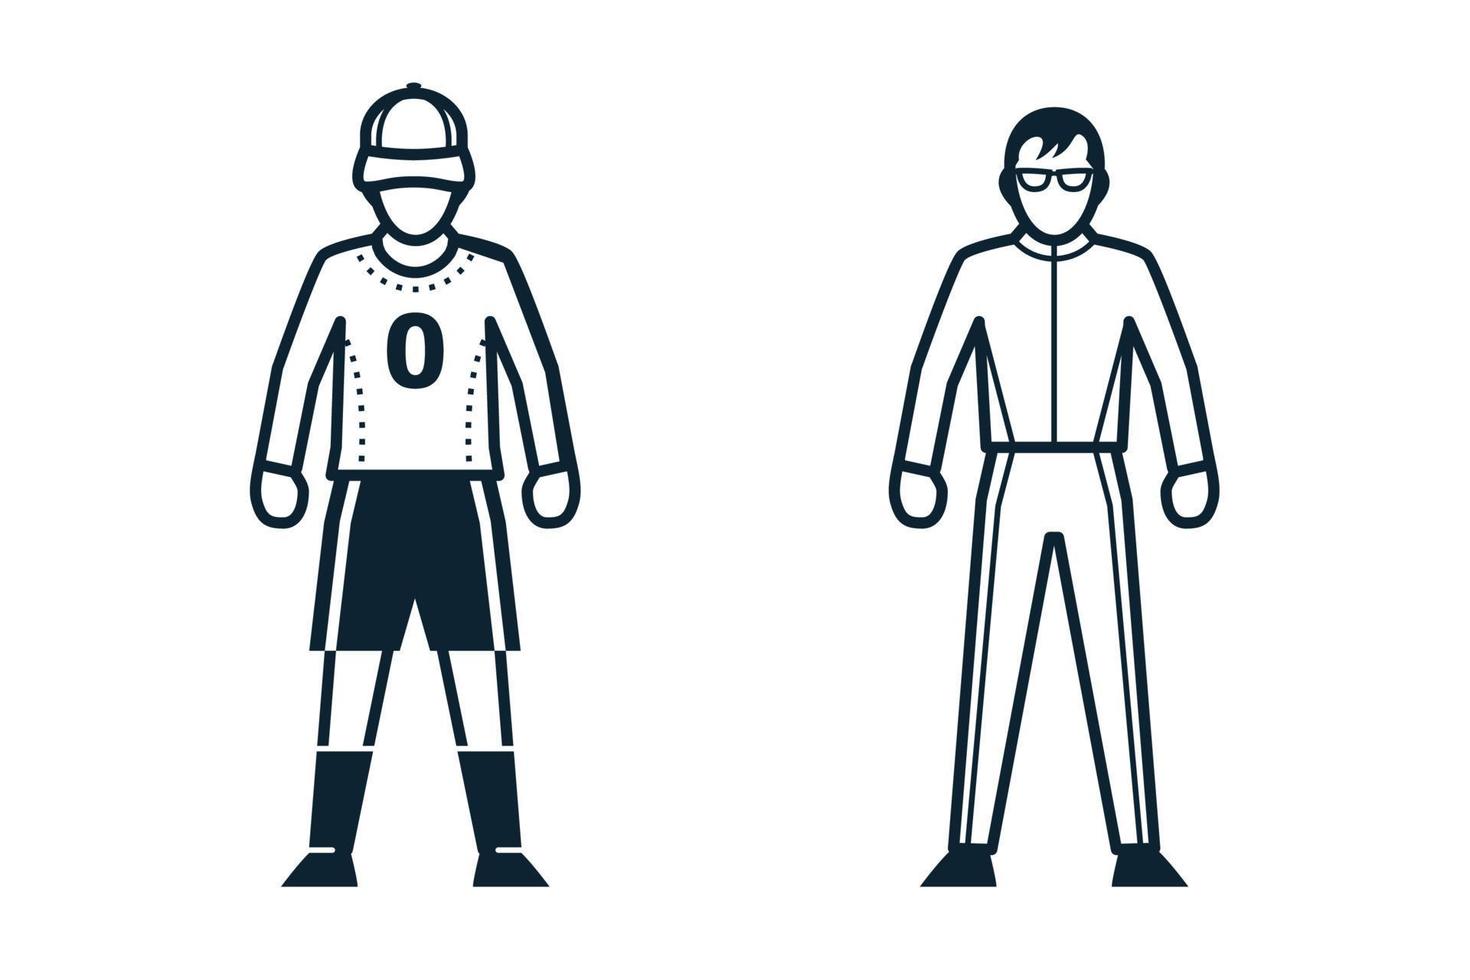 joueur de football, icônes de personnes et de vêtements avec fond blanc vecteur